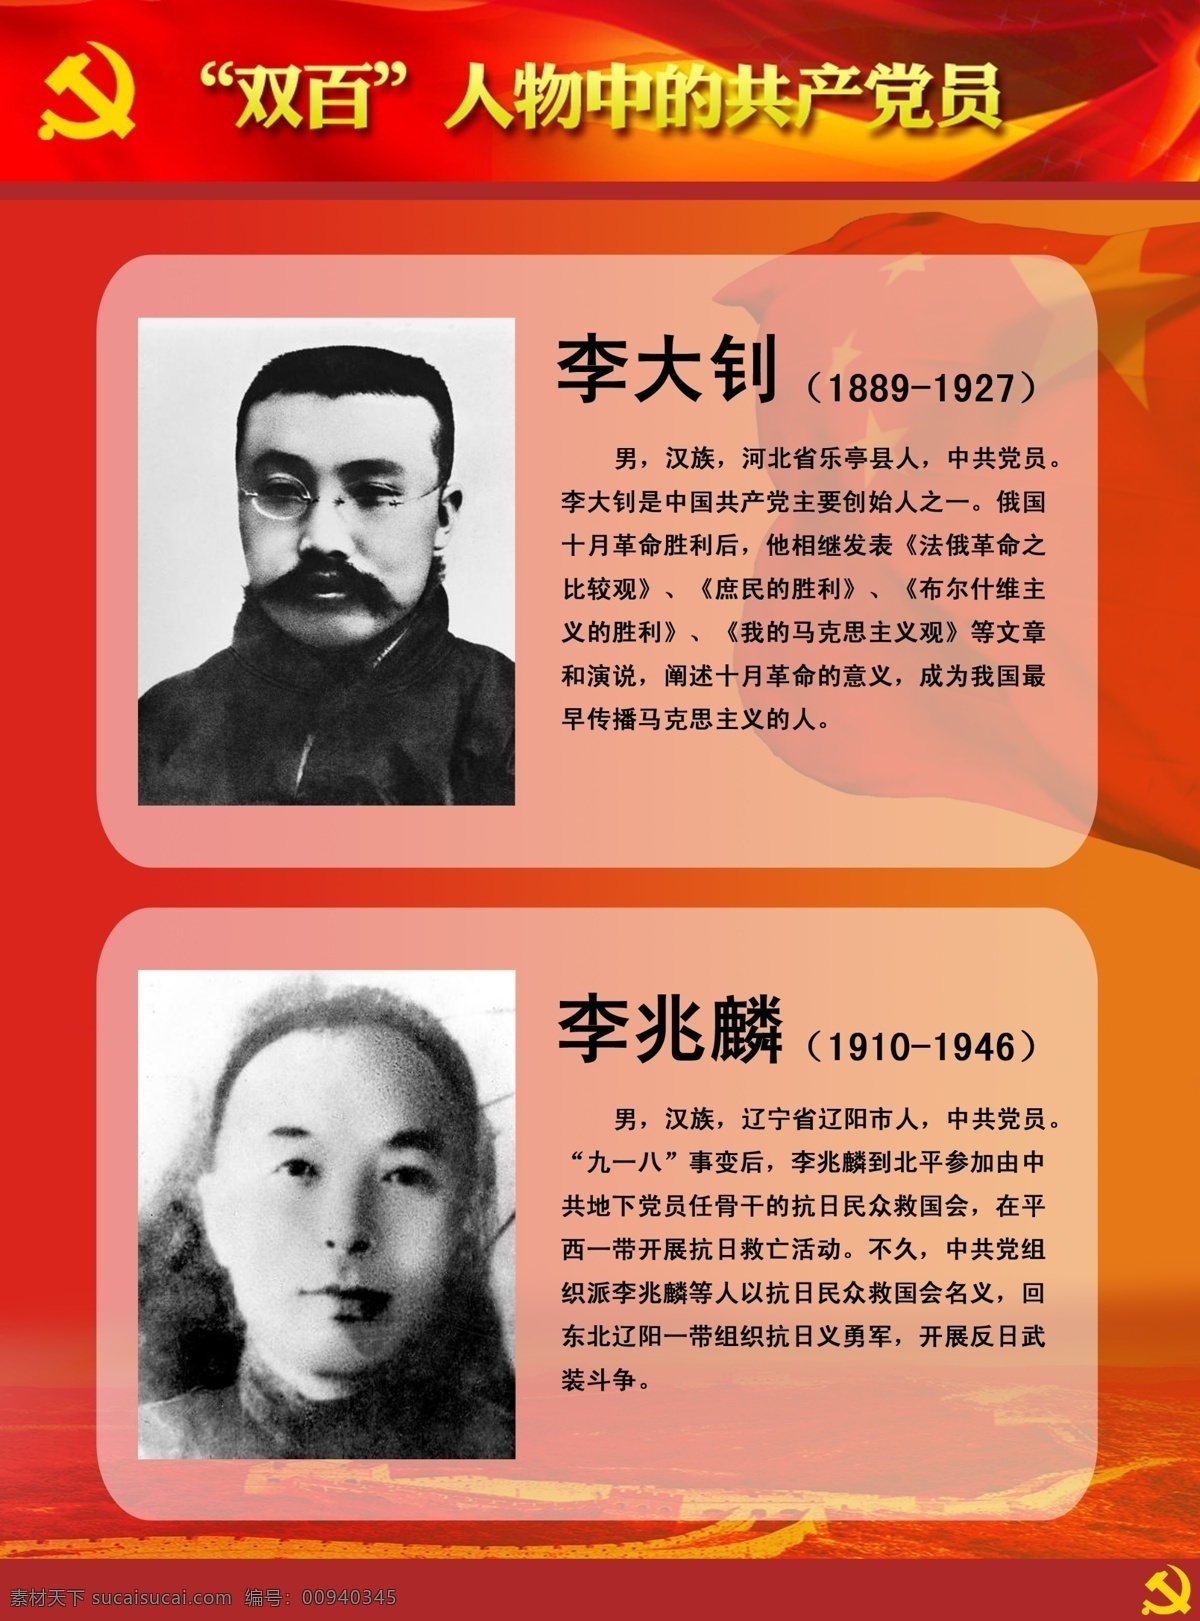 双百人物展板 双百人物 共产党员 李大钊 李兆麟 英雄人物 牺牲 英雄 展板模板 广告设计模板 源文件